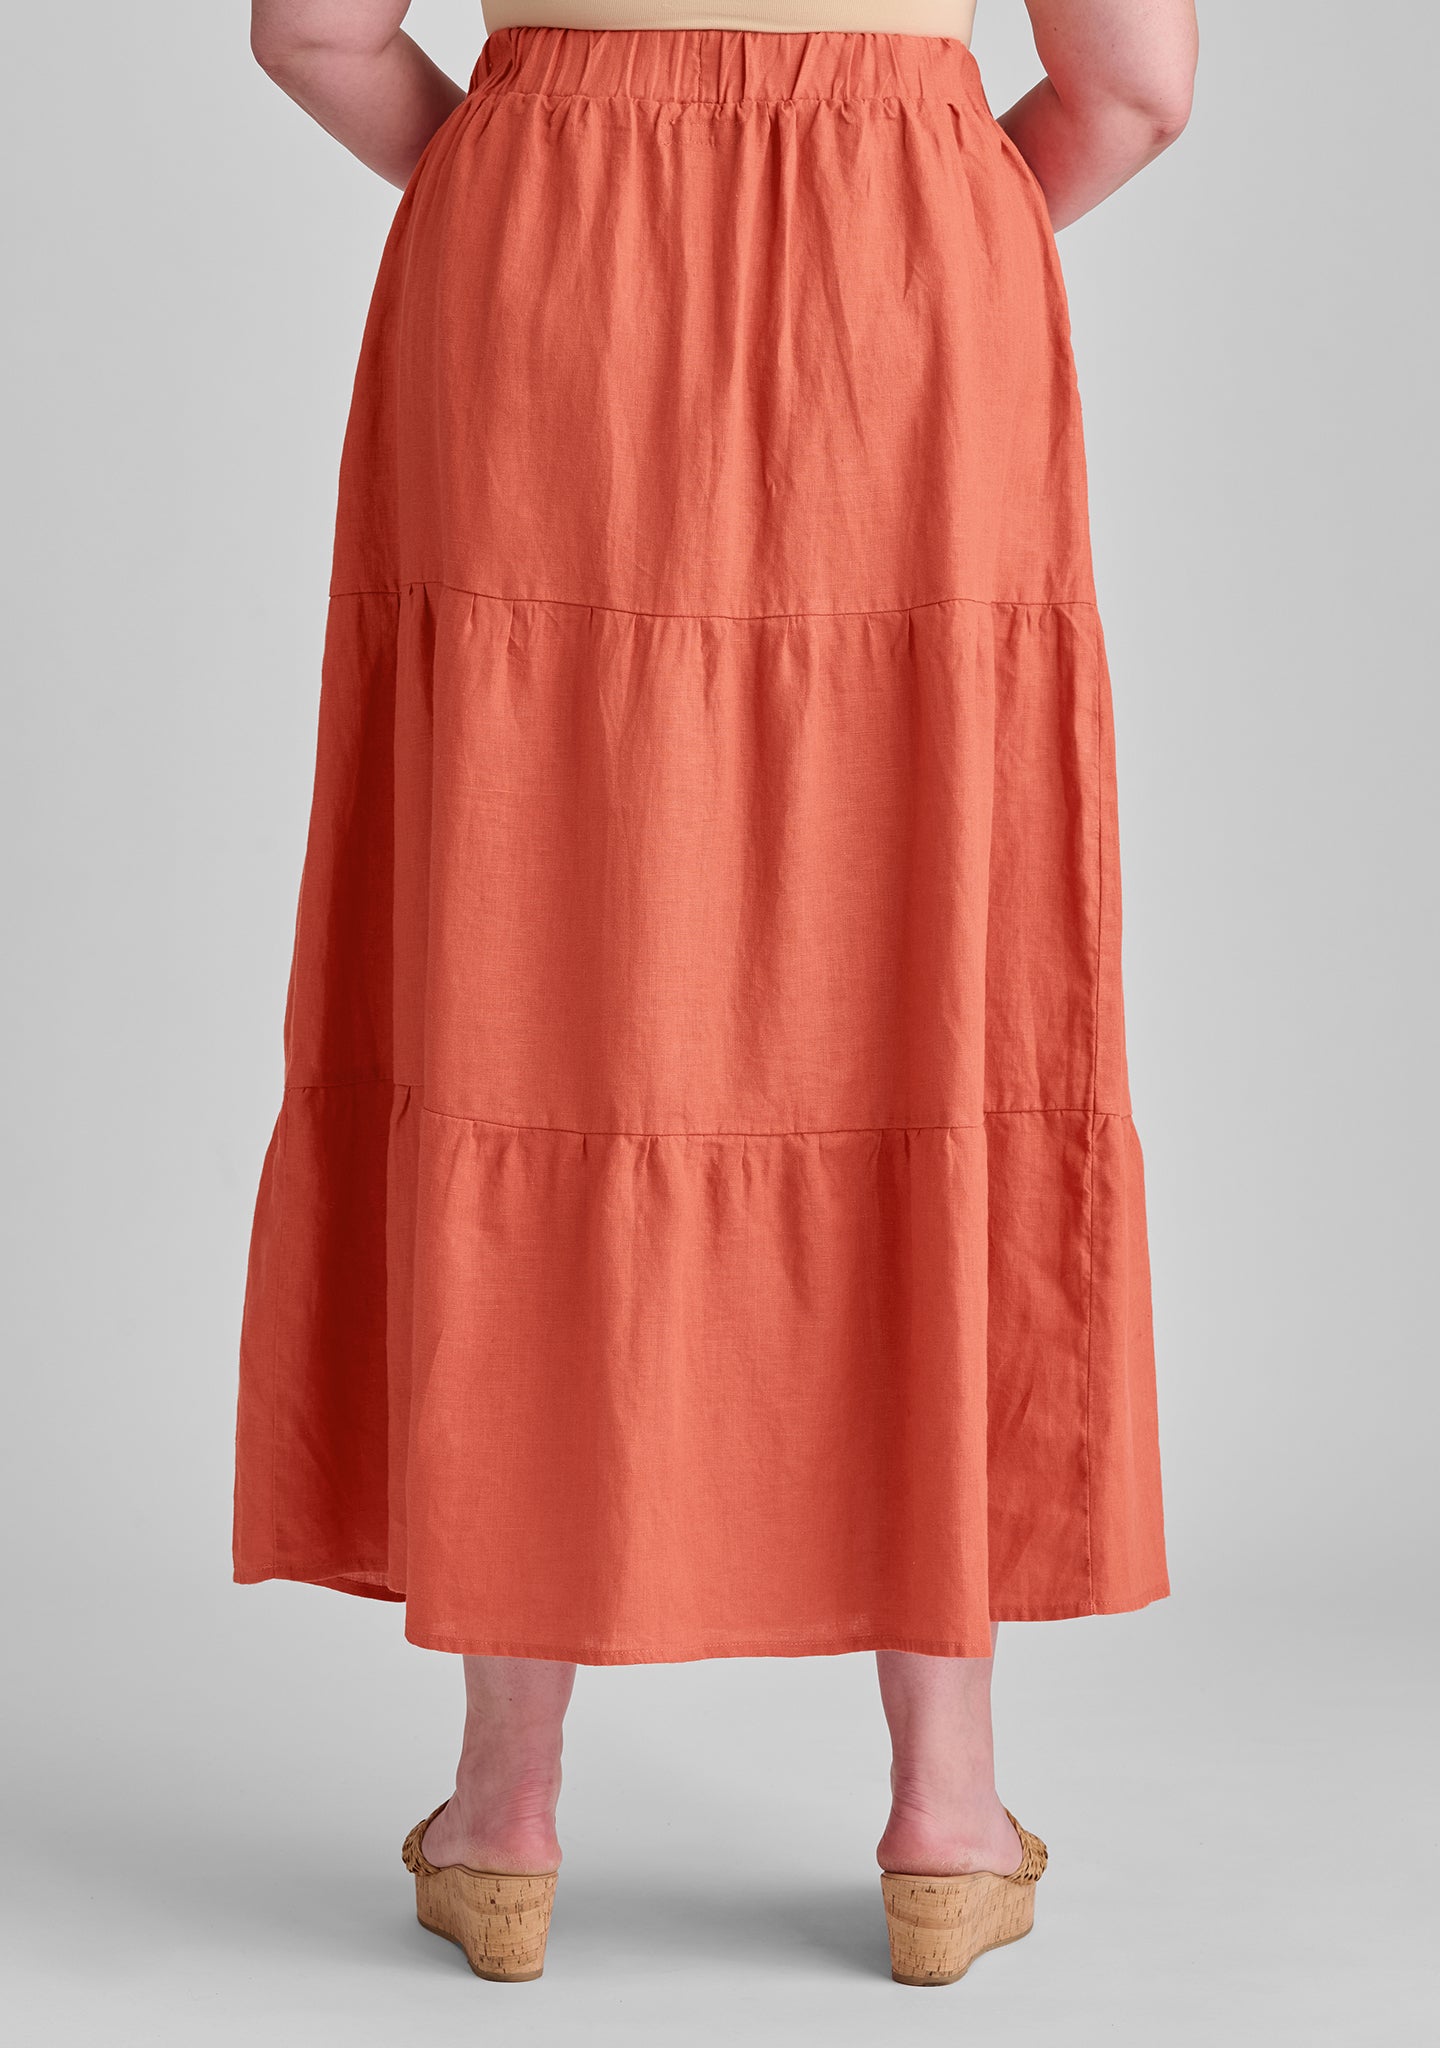 gaia skirt linen maxi skirt details